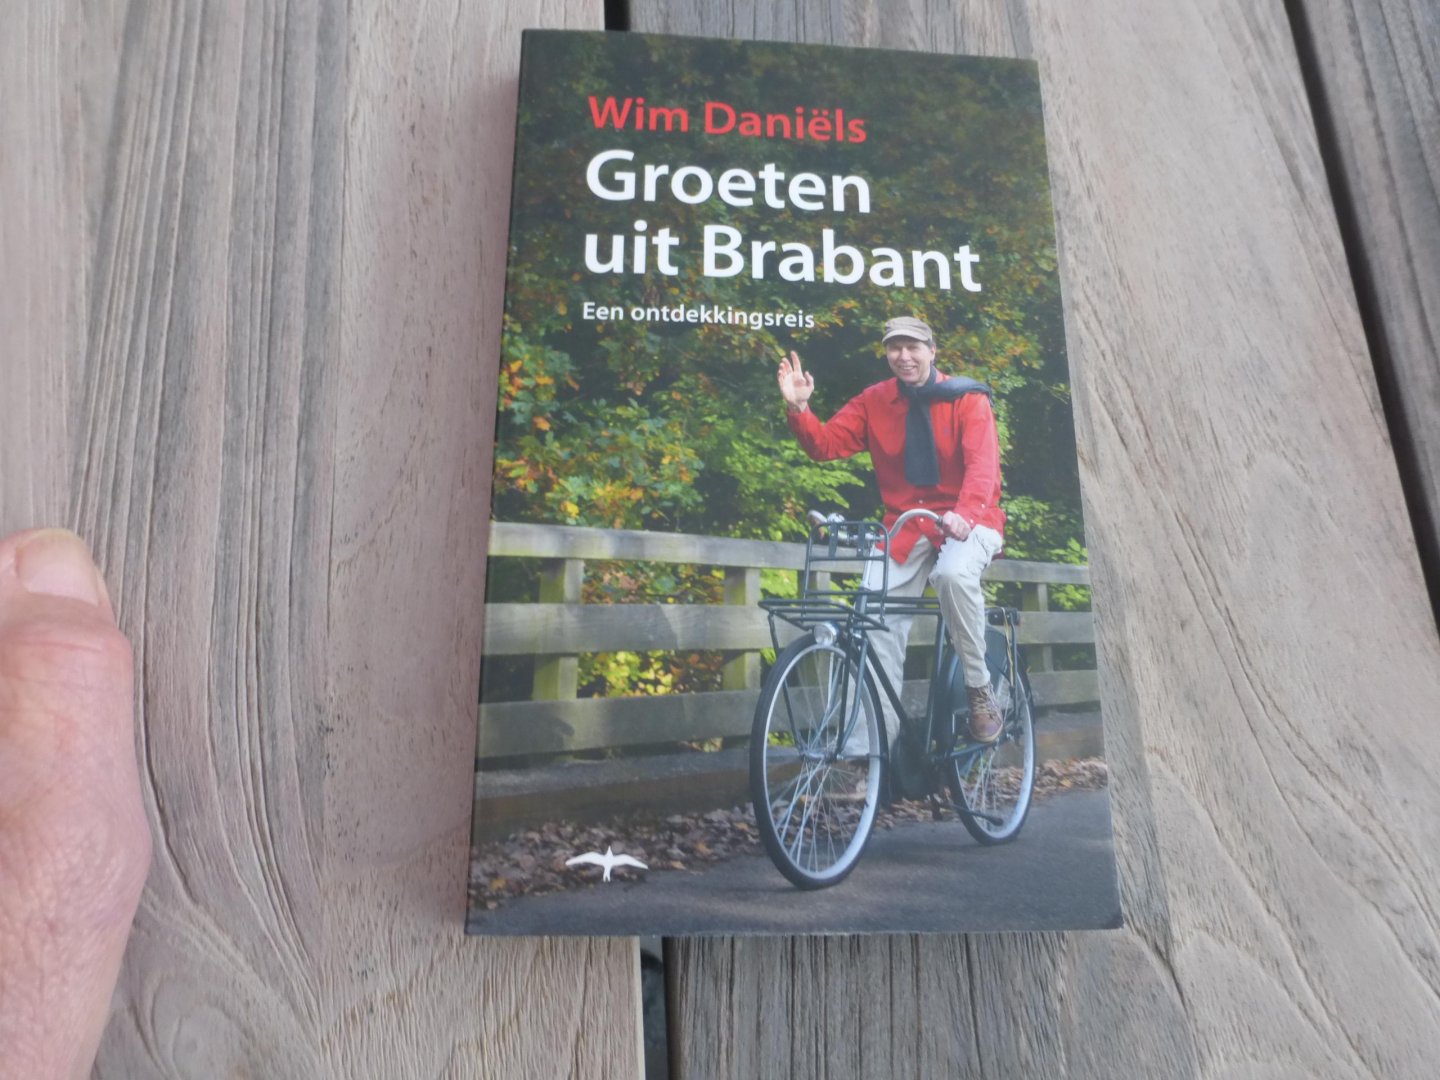 Daniëls, Wim - Groeten uit Brabant / een ontdekkingsreis